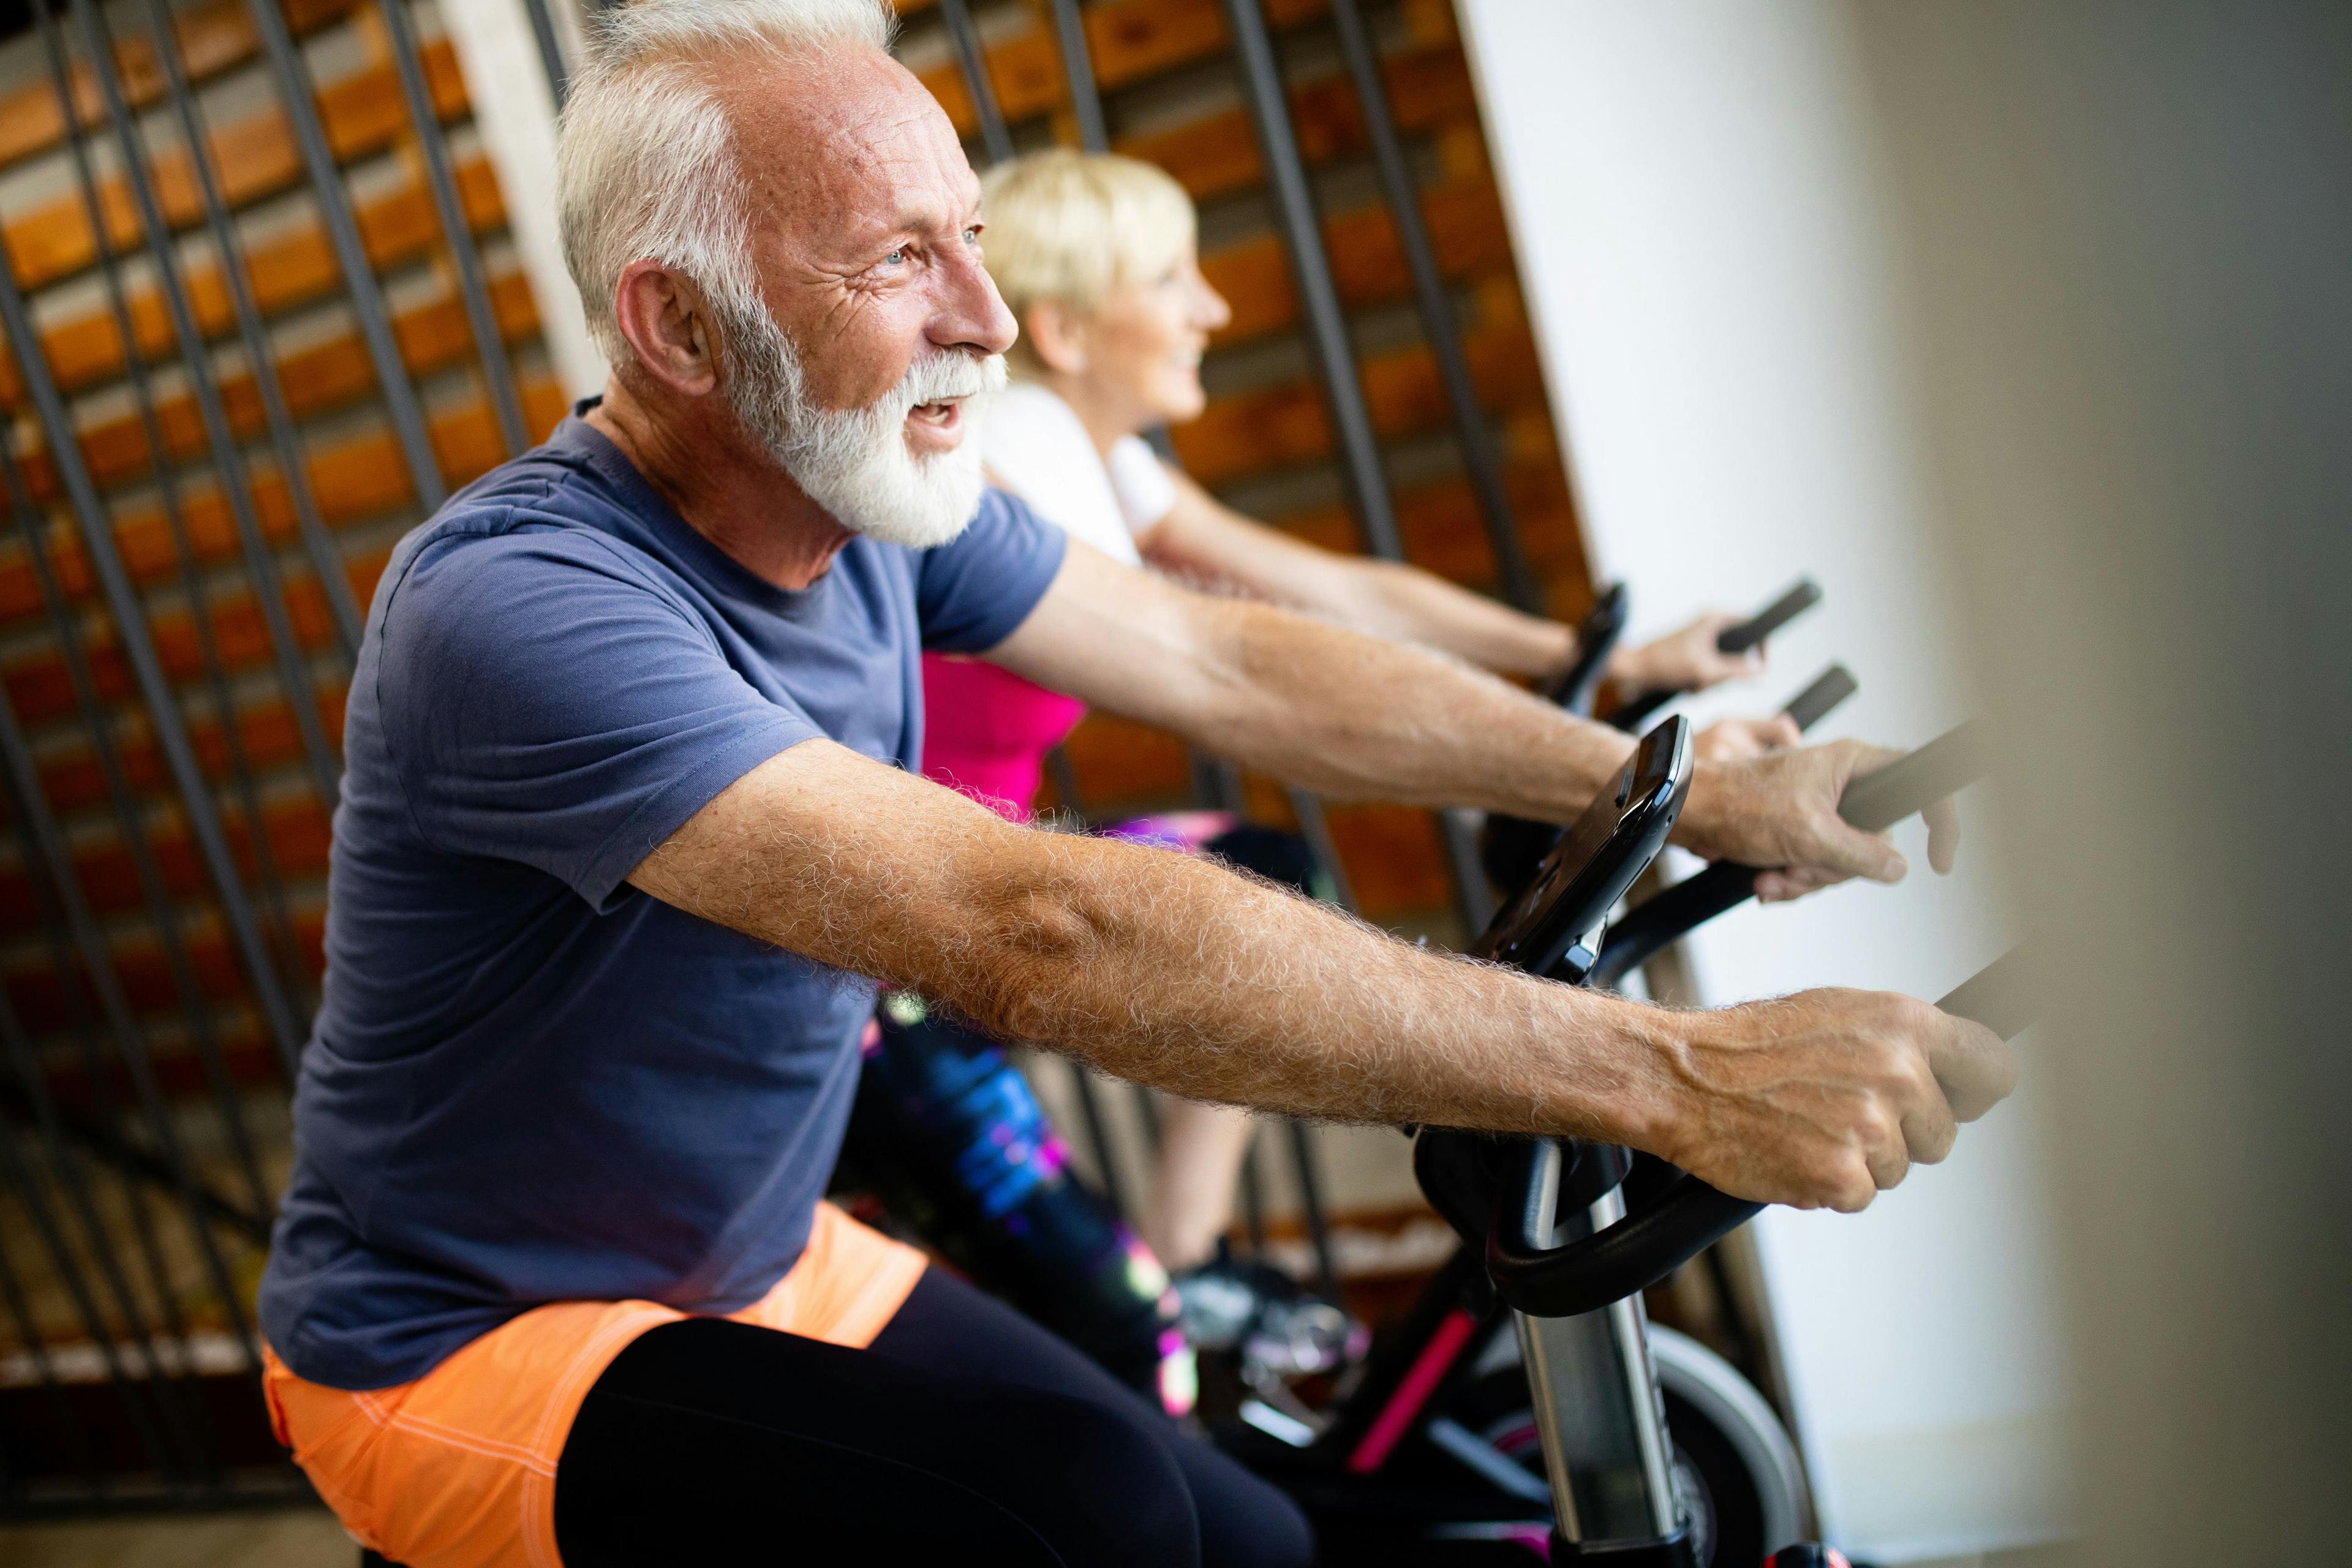 Older patients exercising